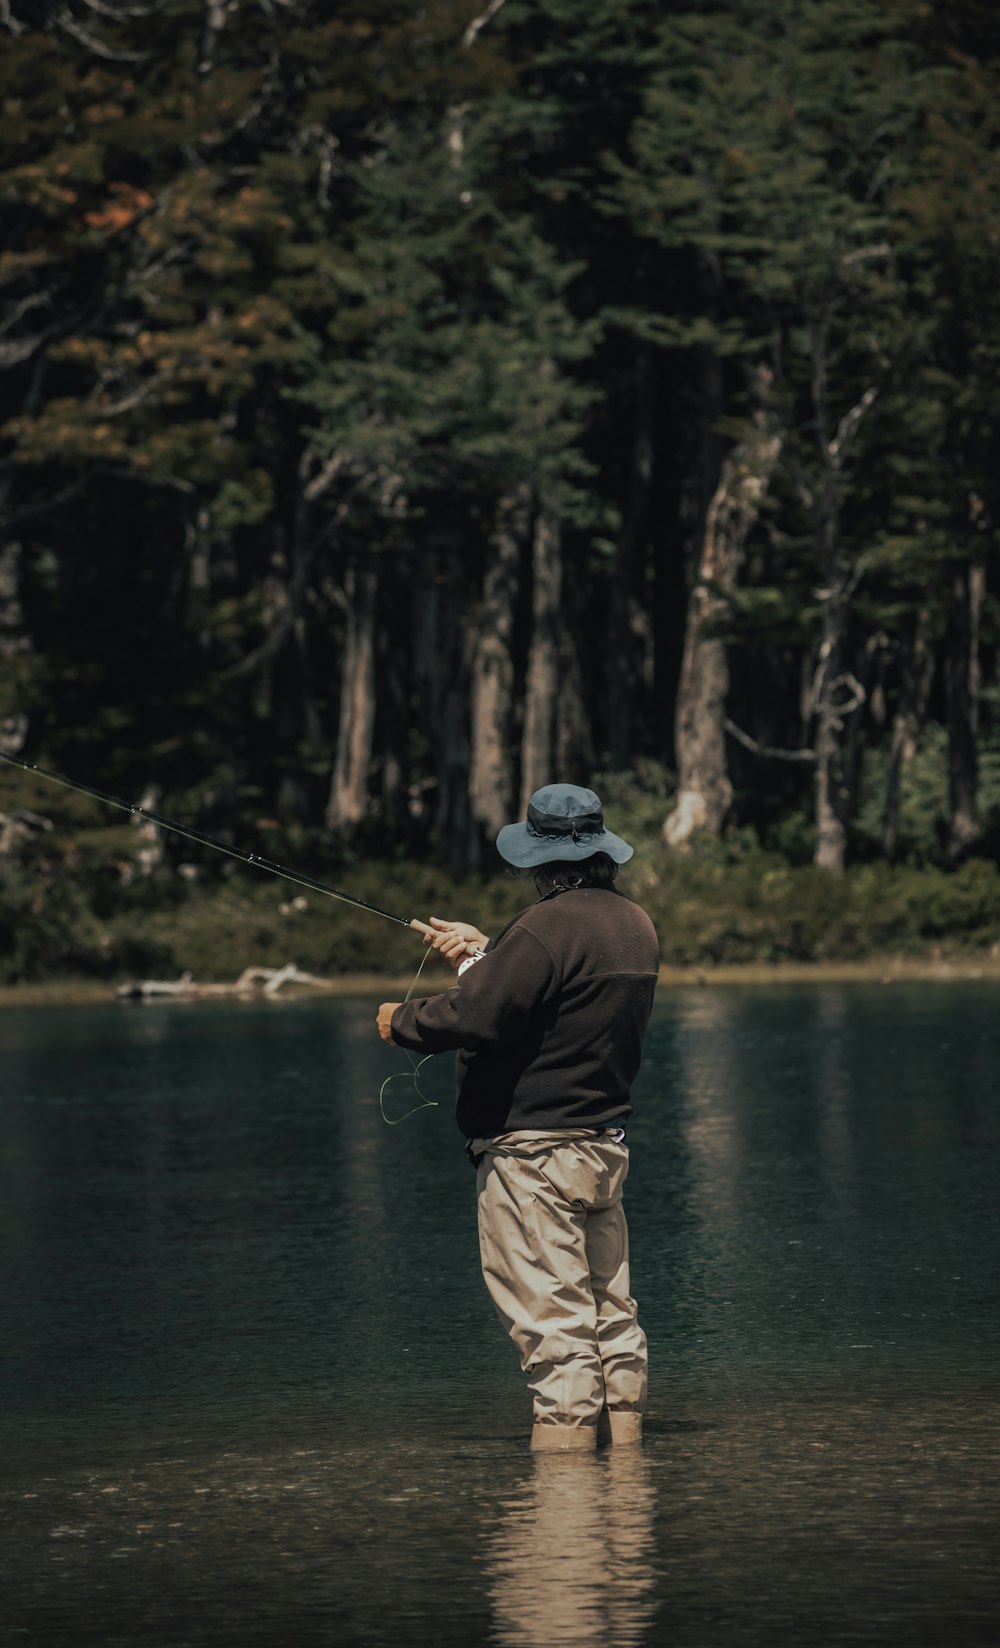 man in black jacket fishing on lake during daytime